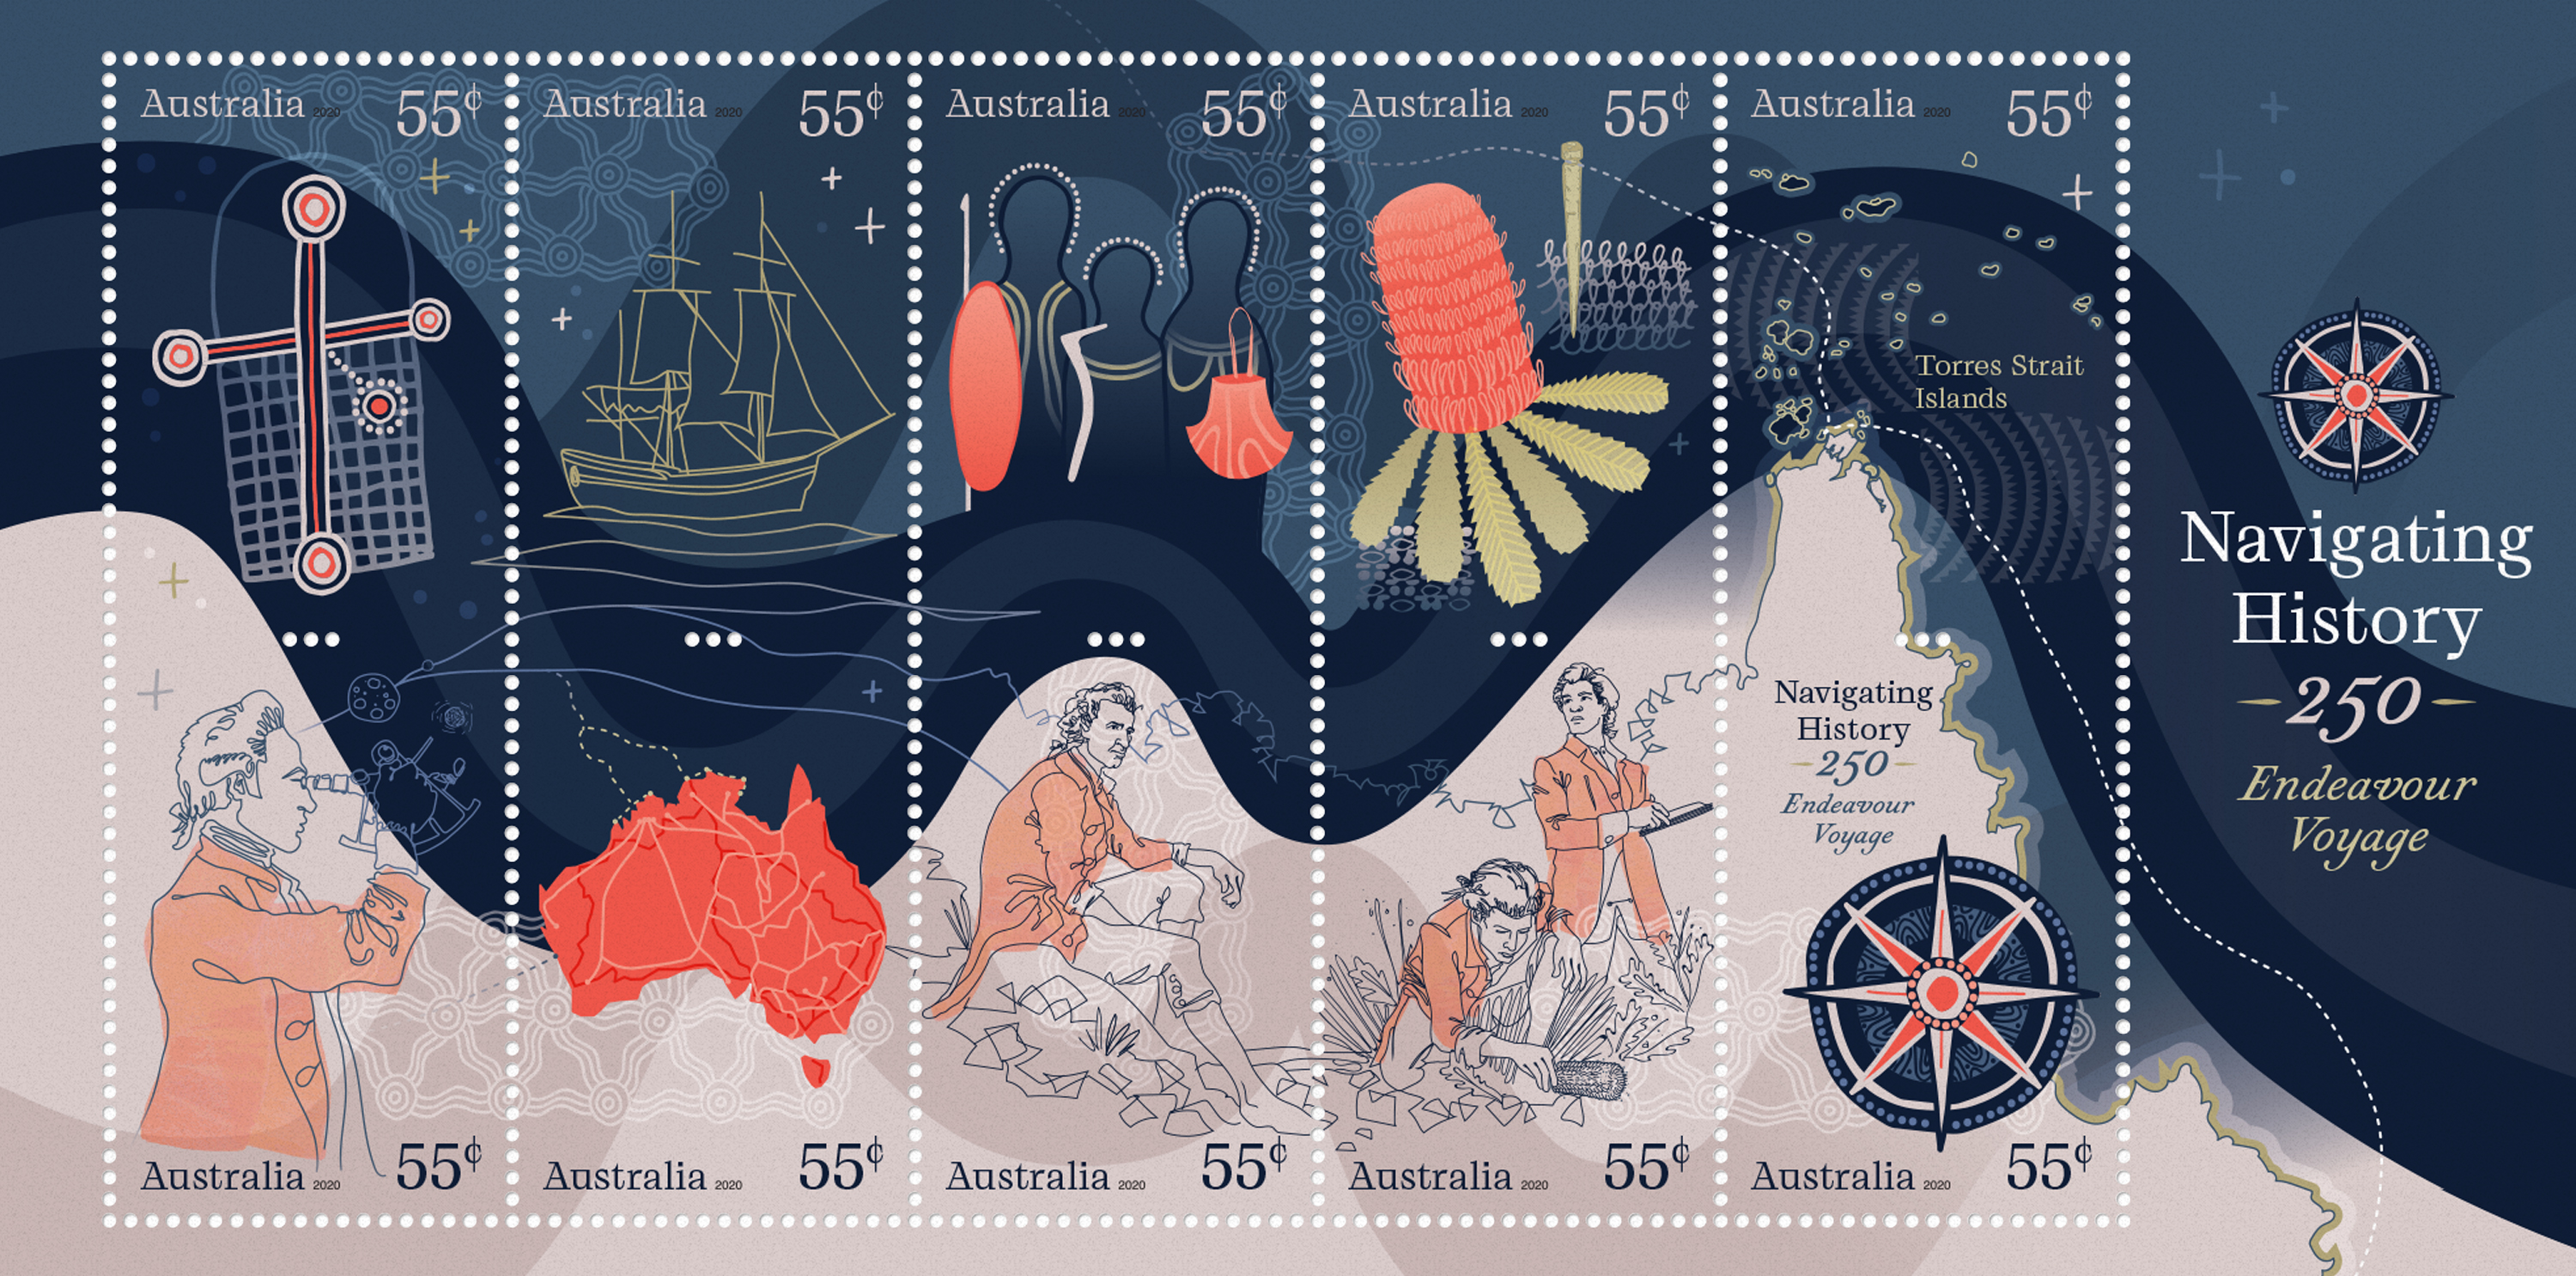 Gilimbaa Australia Post Navigating History 1